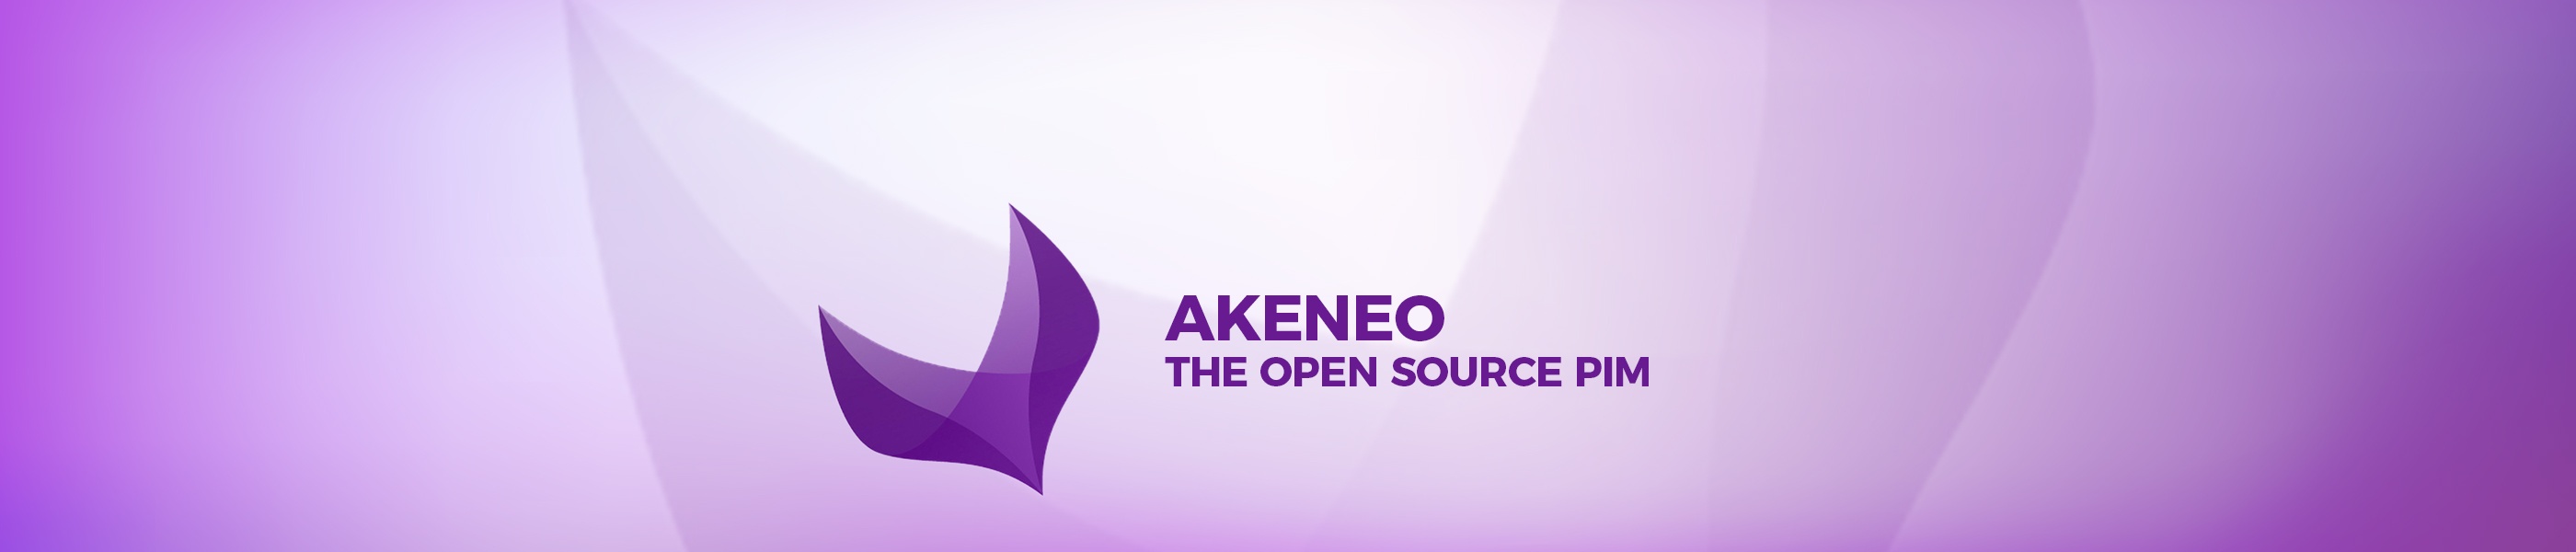 Akeneo PIM  - product information management lösung und plattform